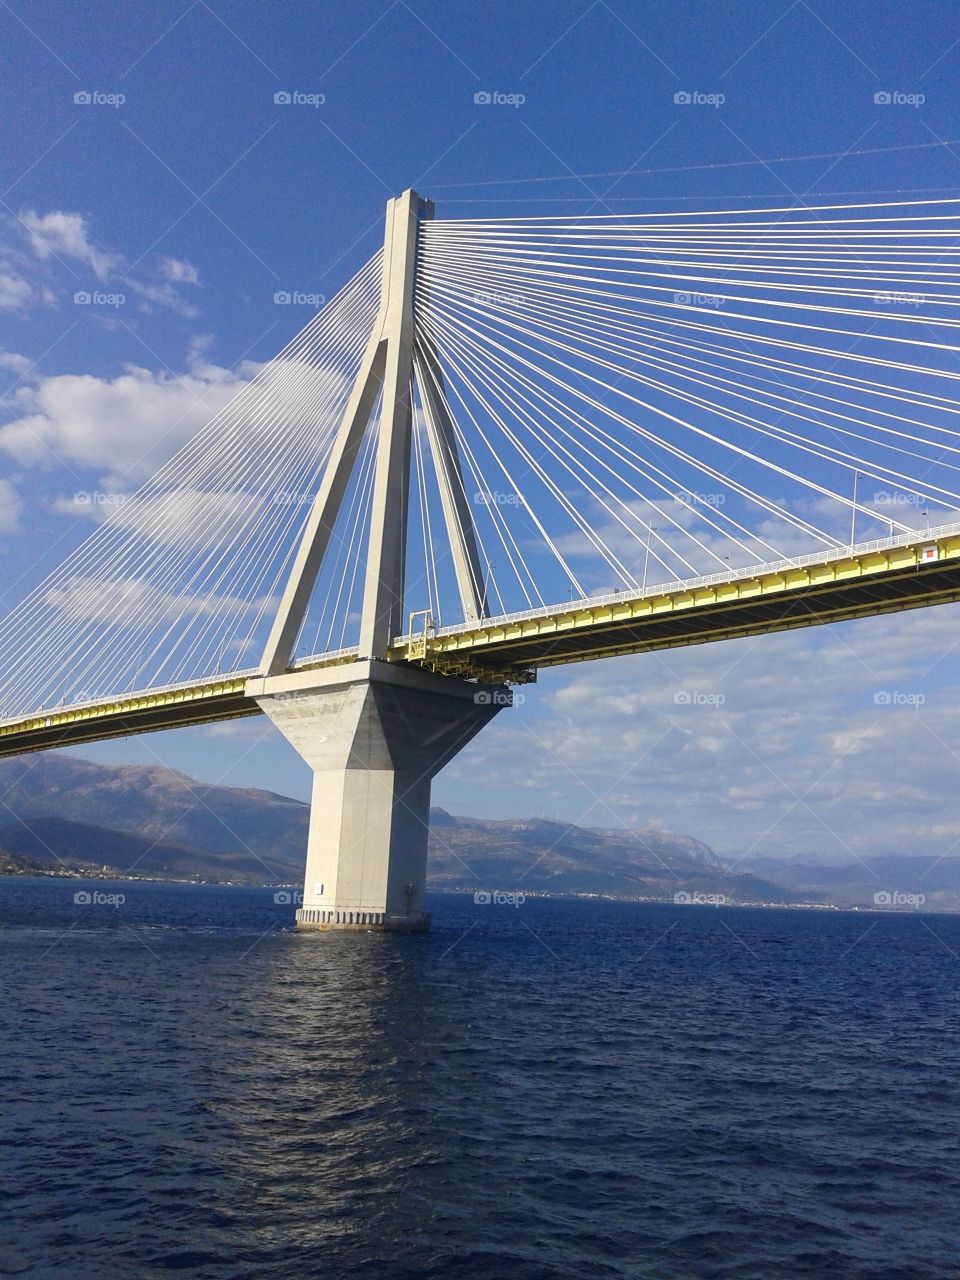 Rio bridge